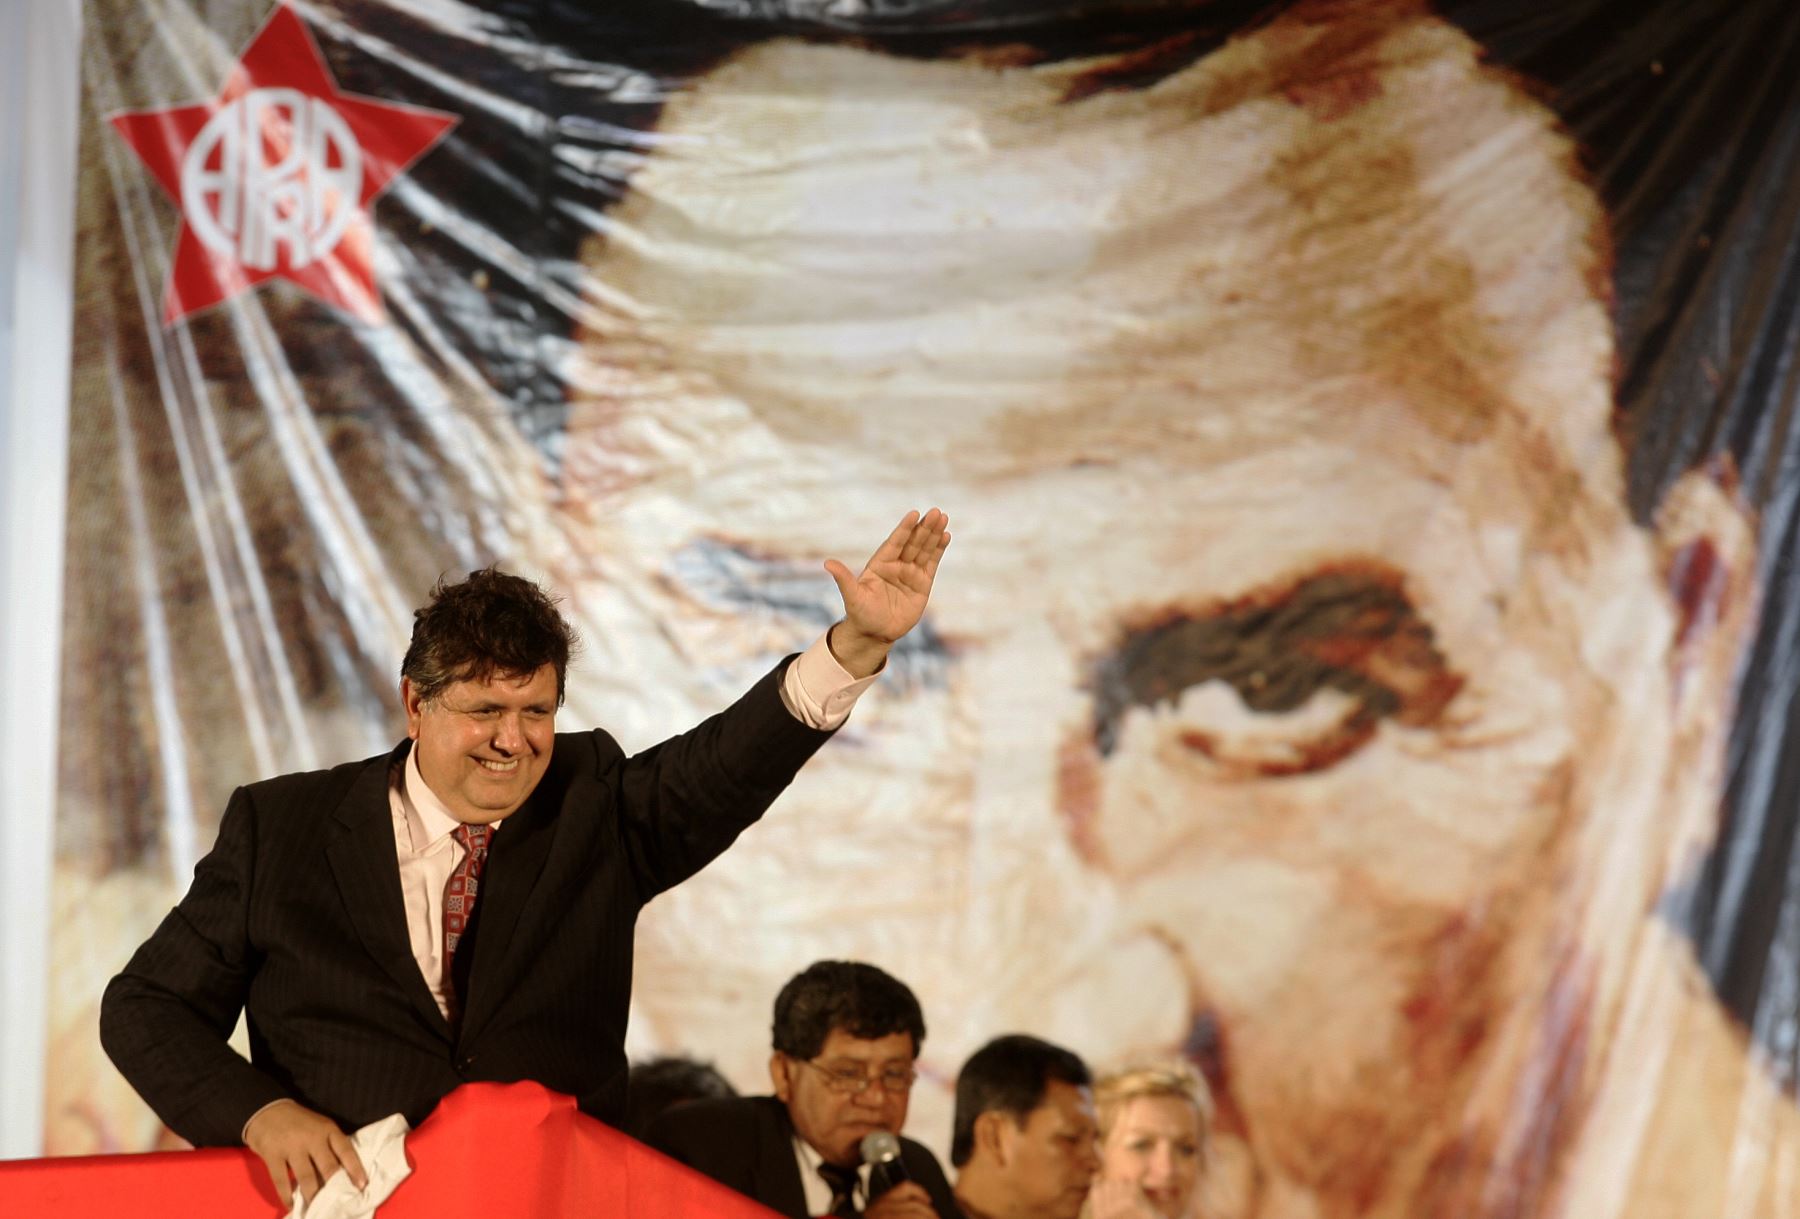 El ex presidente Alan Garcia da un discurso en el Día de la Fraternidad en el año 2009.
Foto: Agencia Andina